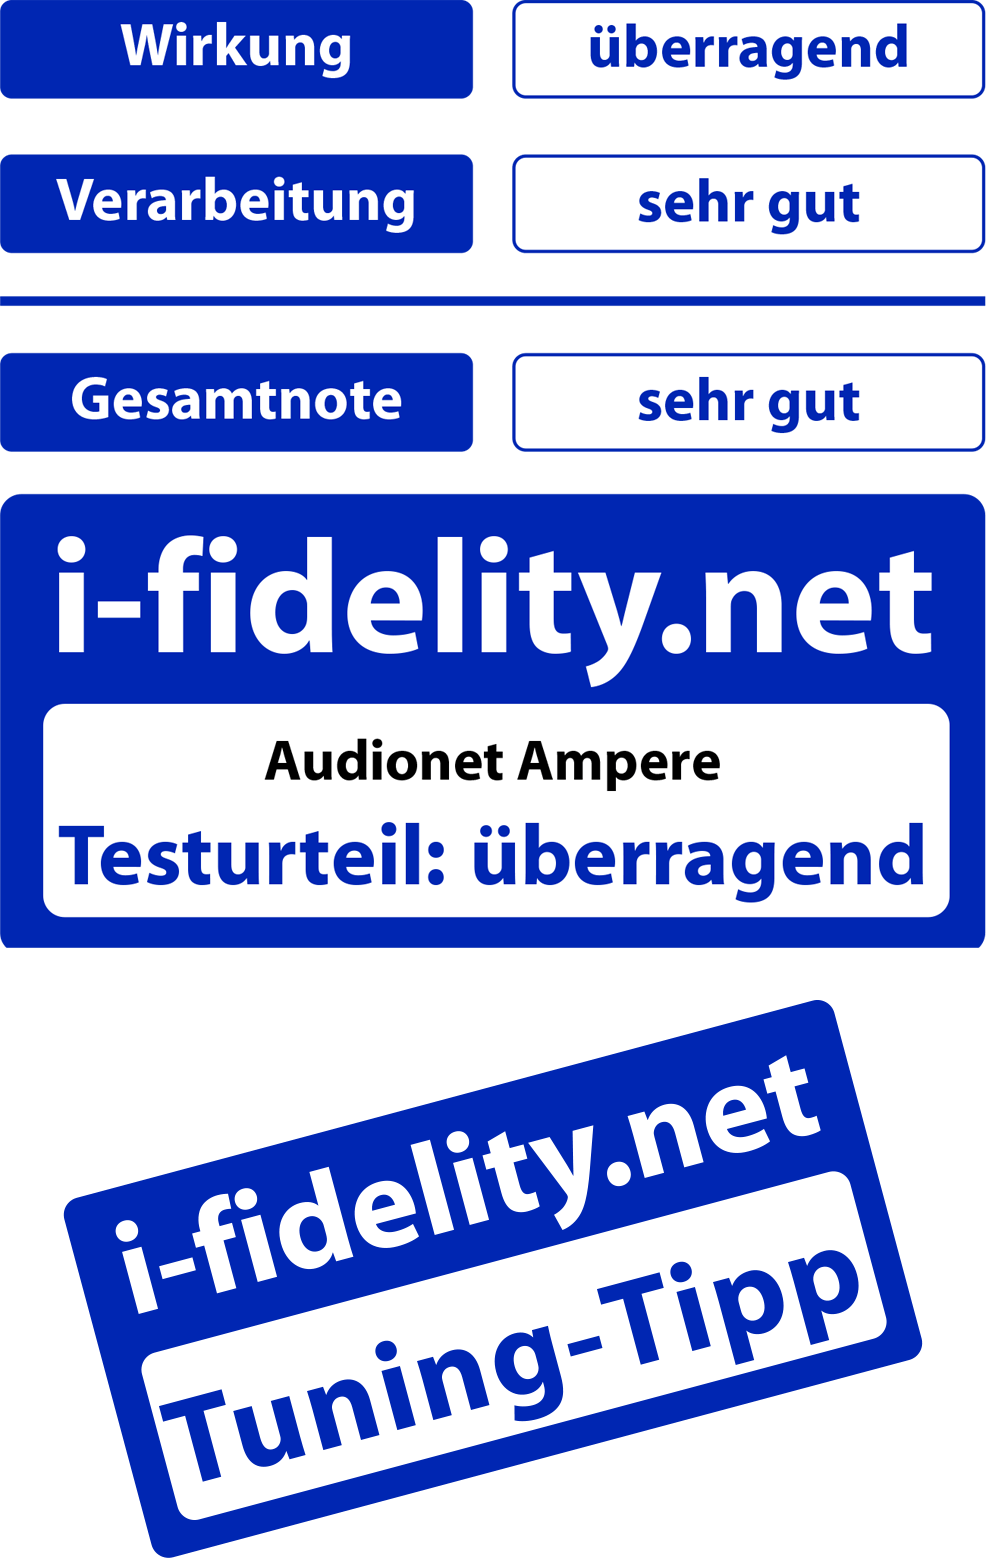 Audionet AMPERE i-fidelity.net Testurteil überragend